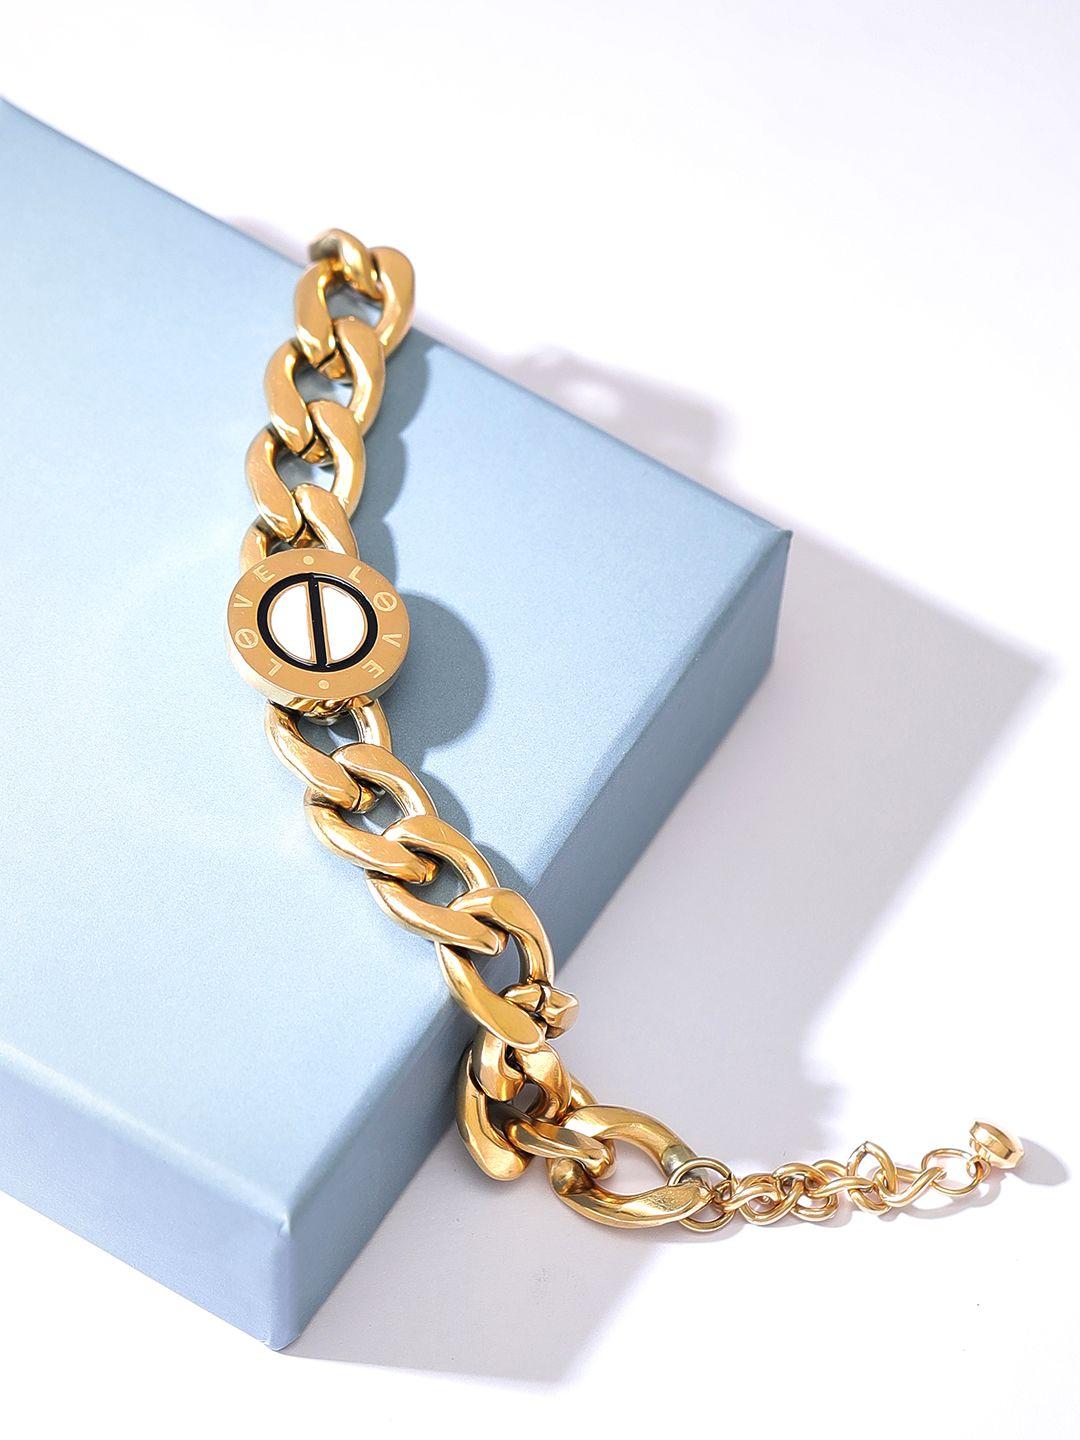 rubans voguish women 18k gold-plated link bracelet